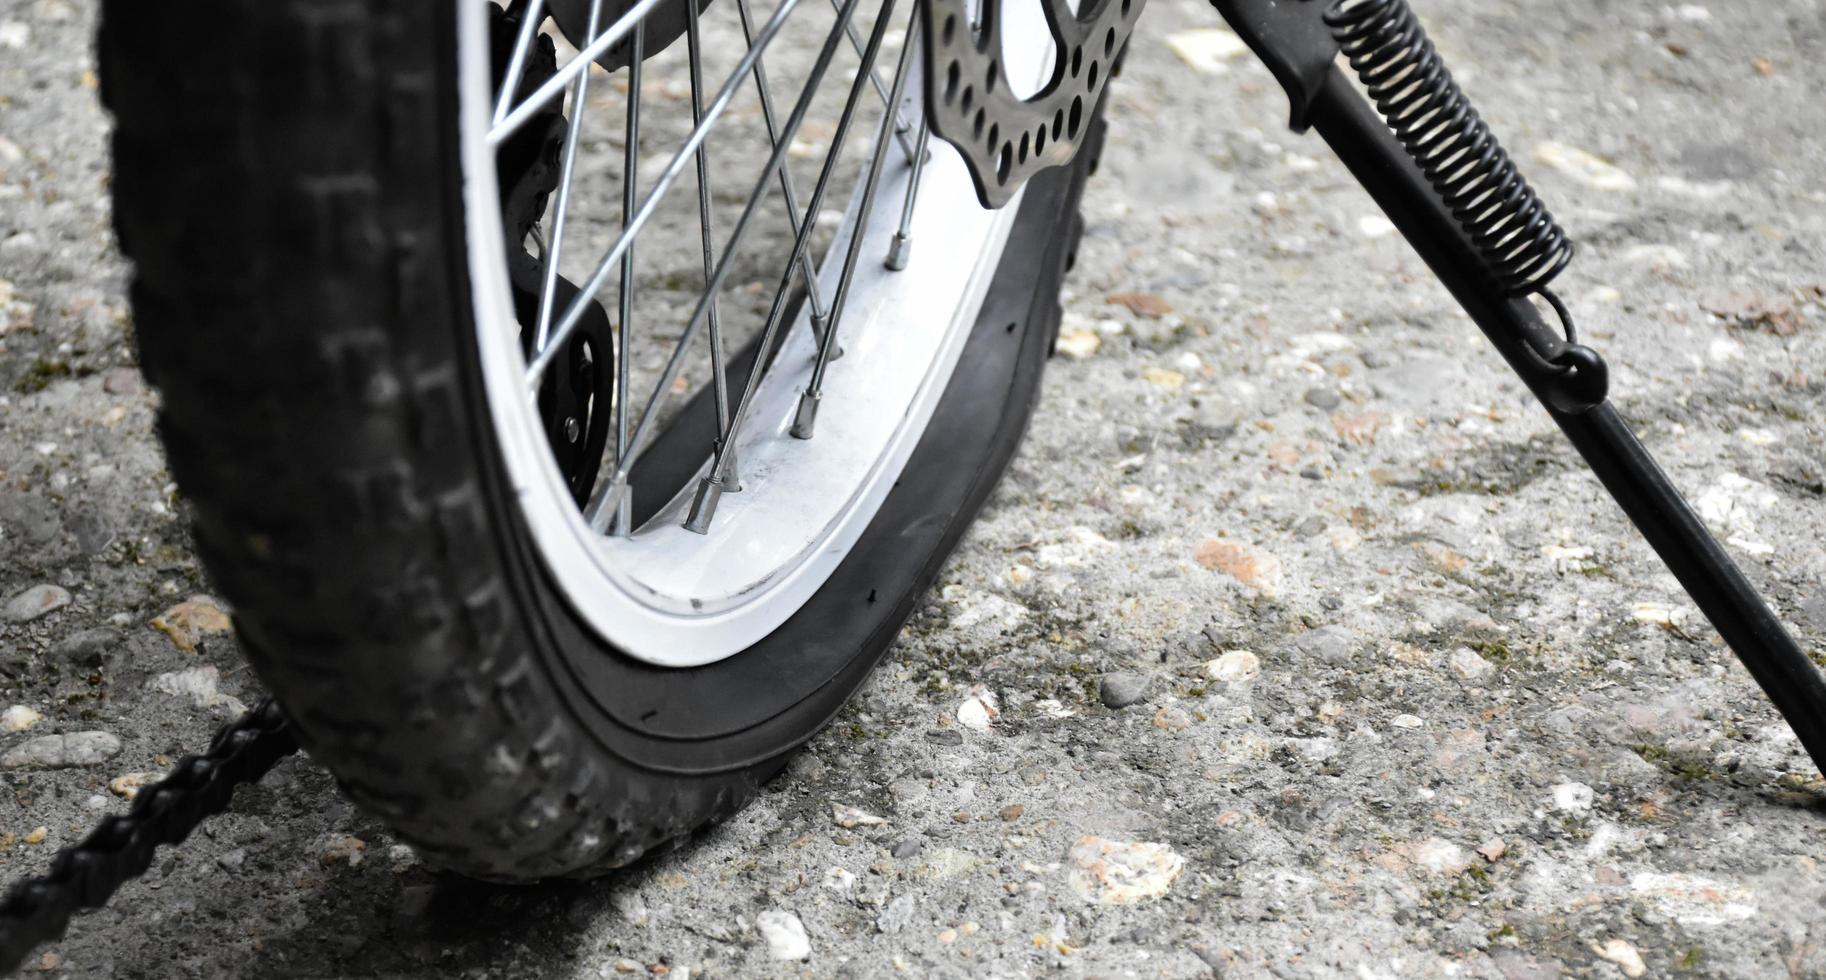 pneu crevé de vélo garé sur un sol en ciment, mise au point douce et sélective. photo